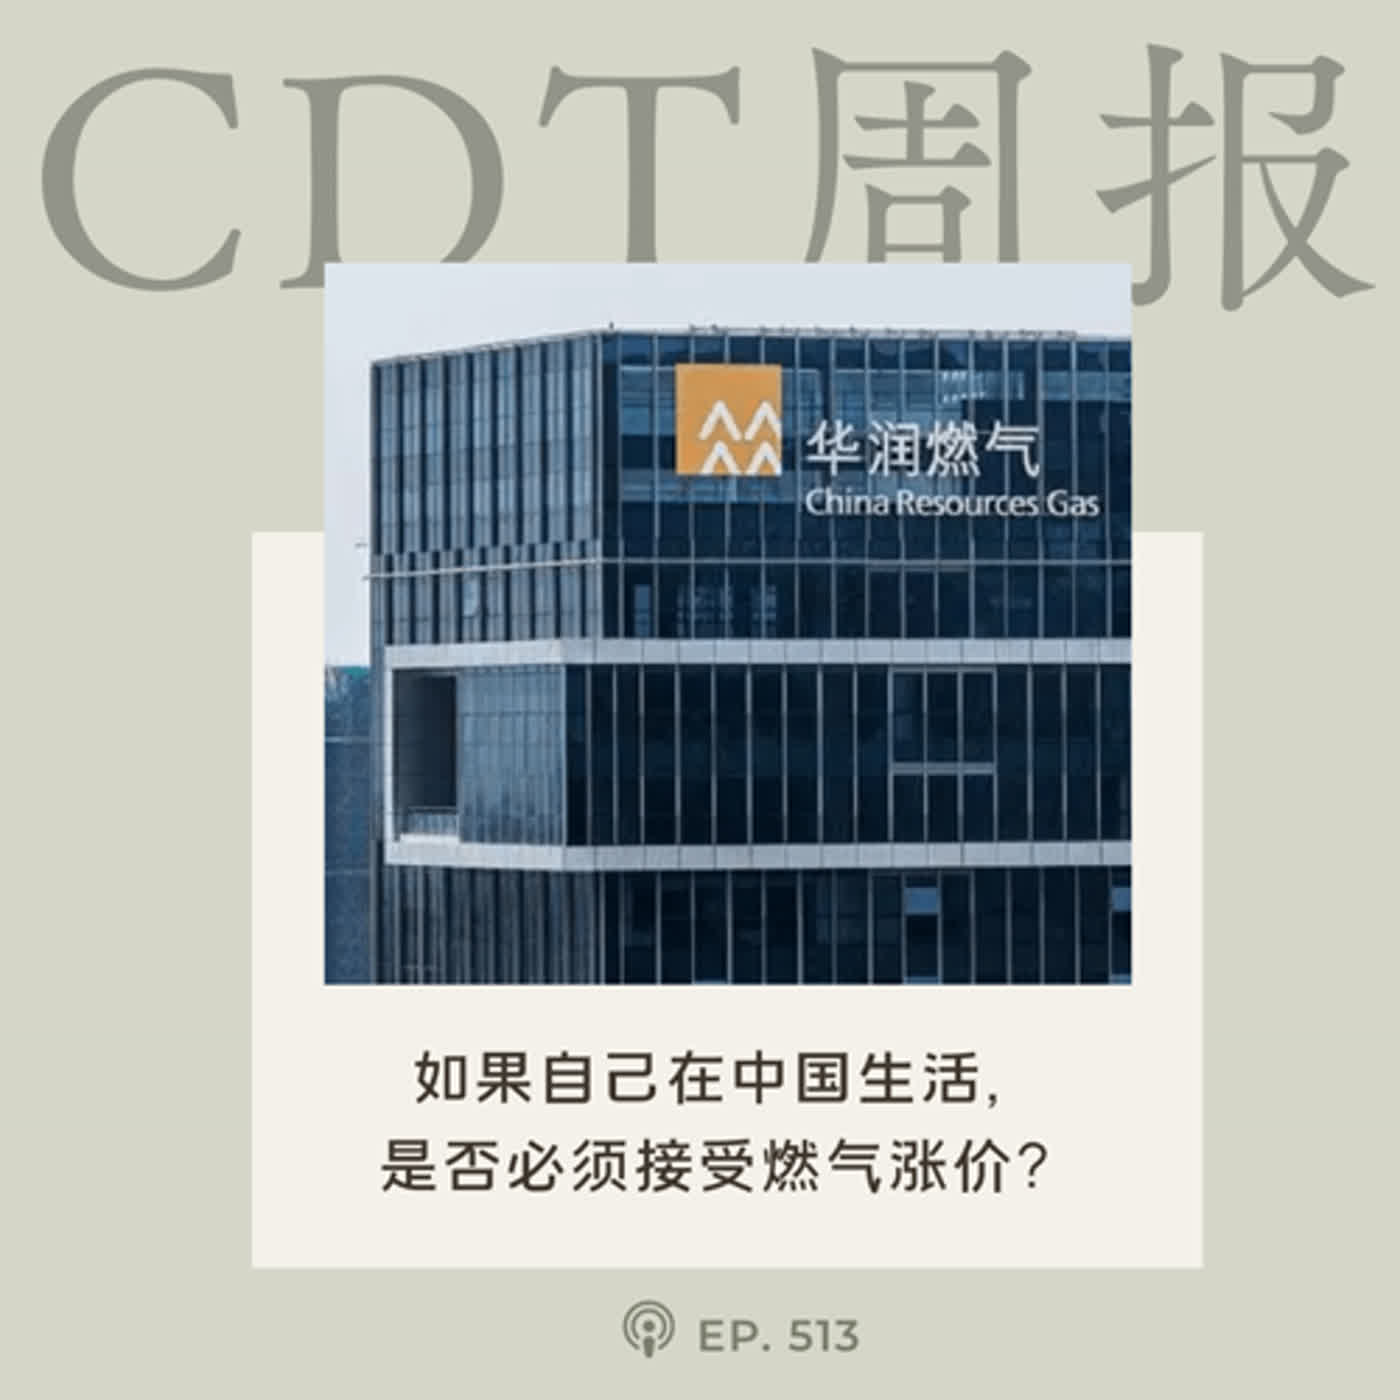 【第513期】CDT周报：如果自己在中国生活，是否必须接受燃气涨价？